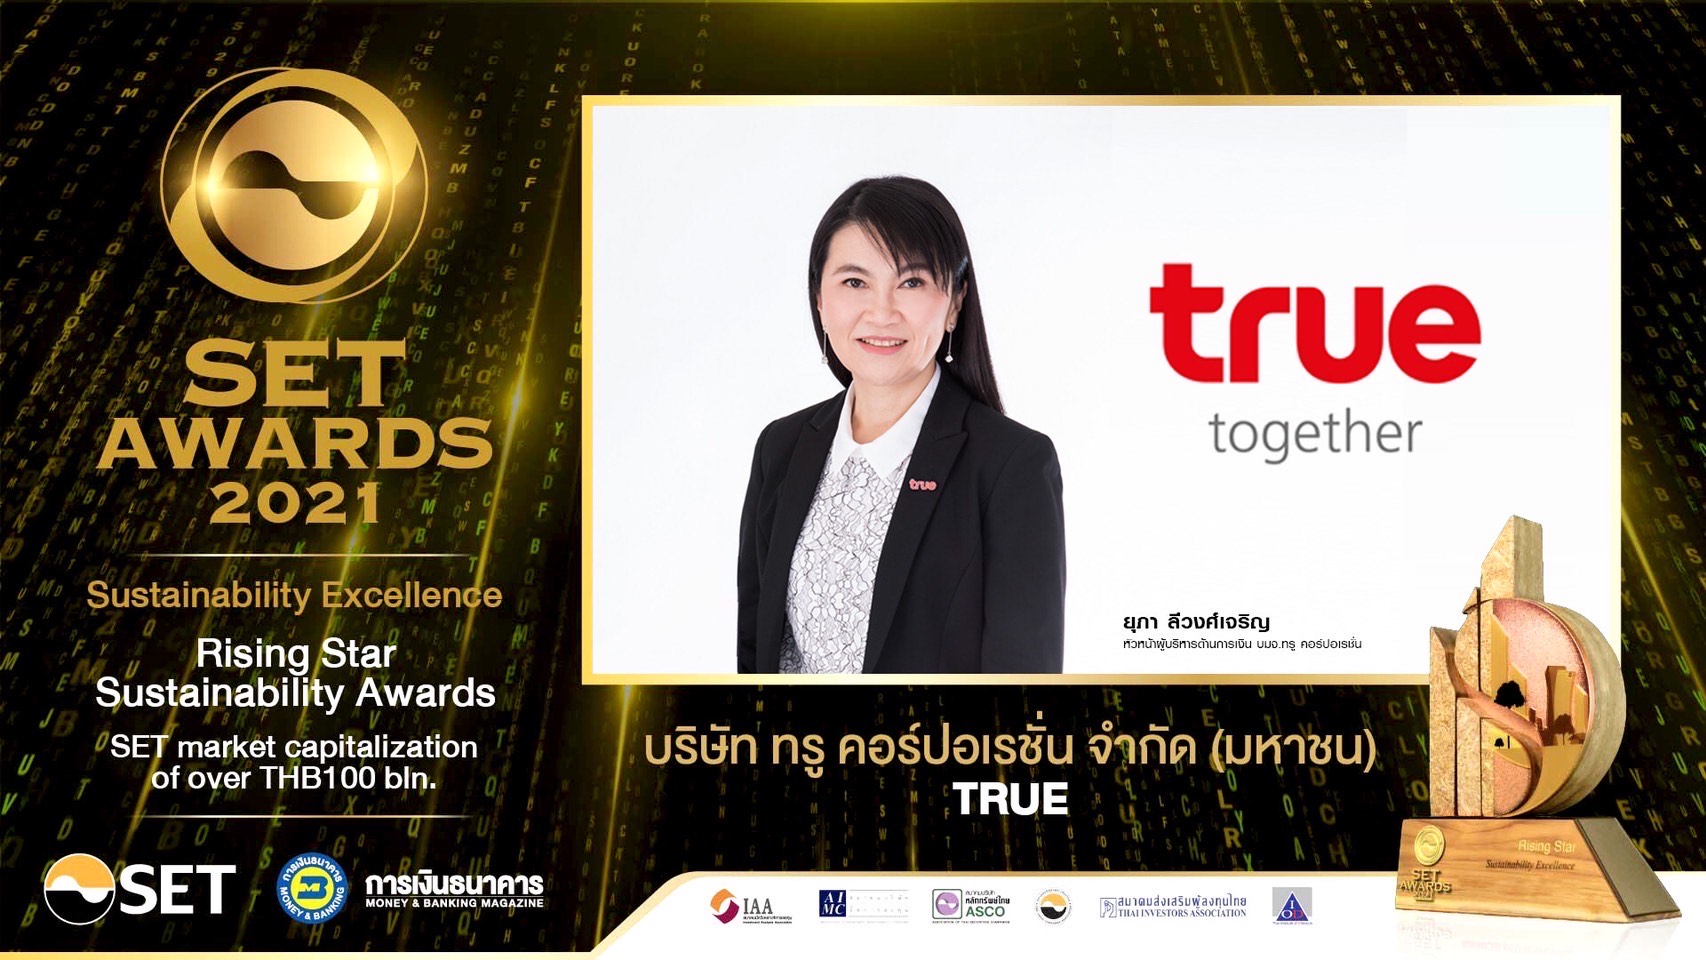 กลุ่มทรู รับรางวัล SET Awards 2021  “ดาวรุ่งด้านความยั่งยืน” (Rising Star Sustainability Awards)  ย้ำภาพองค์กรมุ่งเติบโตอย่างแข็งแกร่ง พร้อมสร้างคุณค่าที่ยั่งยืนแก่สังคมไทย   